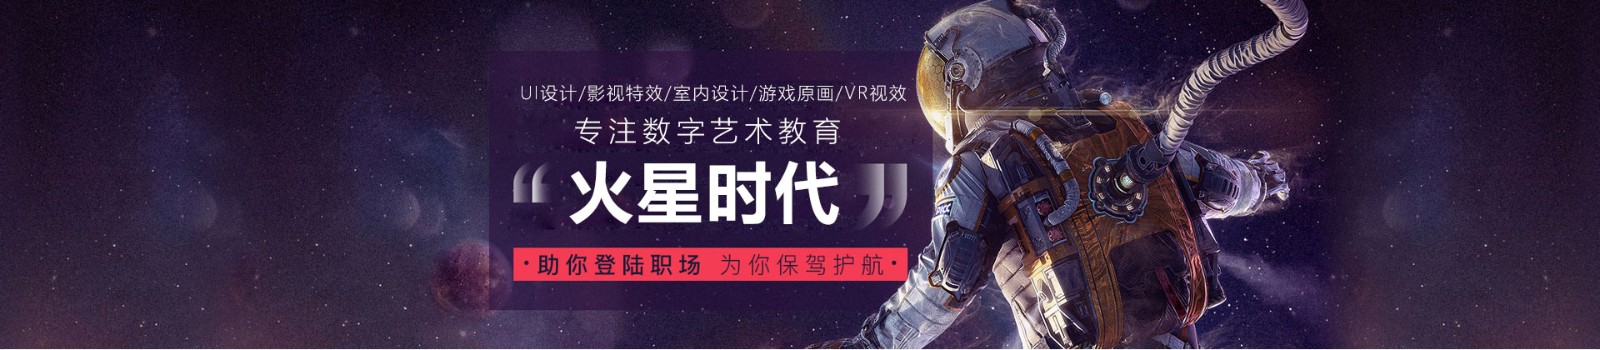 北京火星时代培训学校 横幅广告